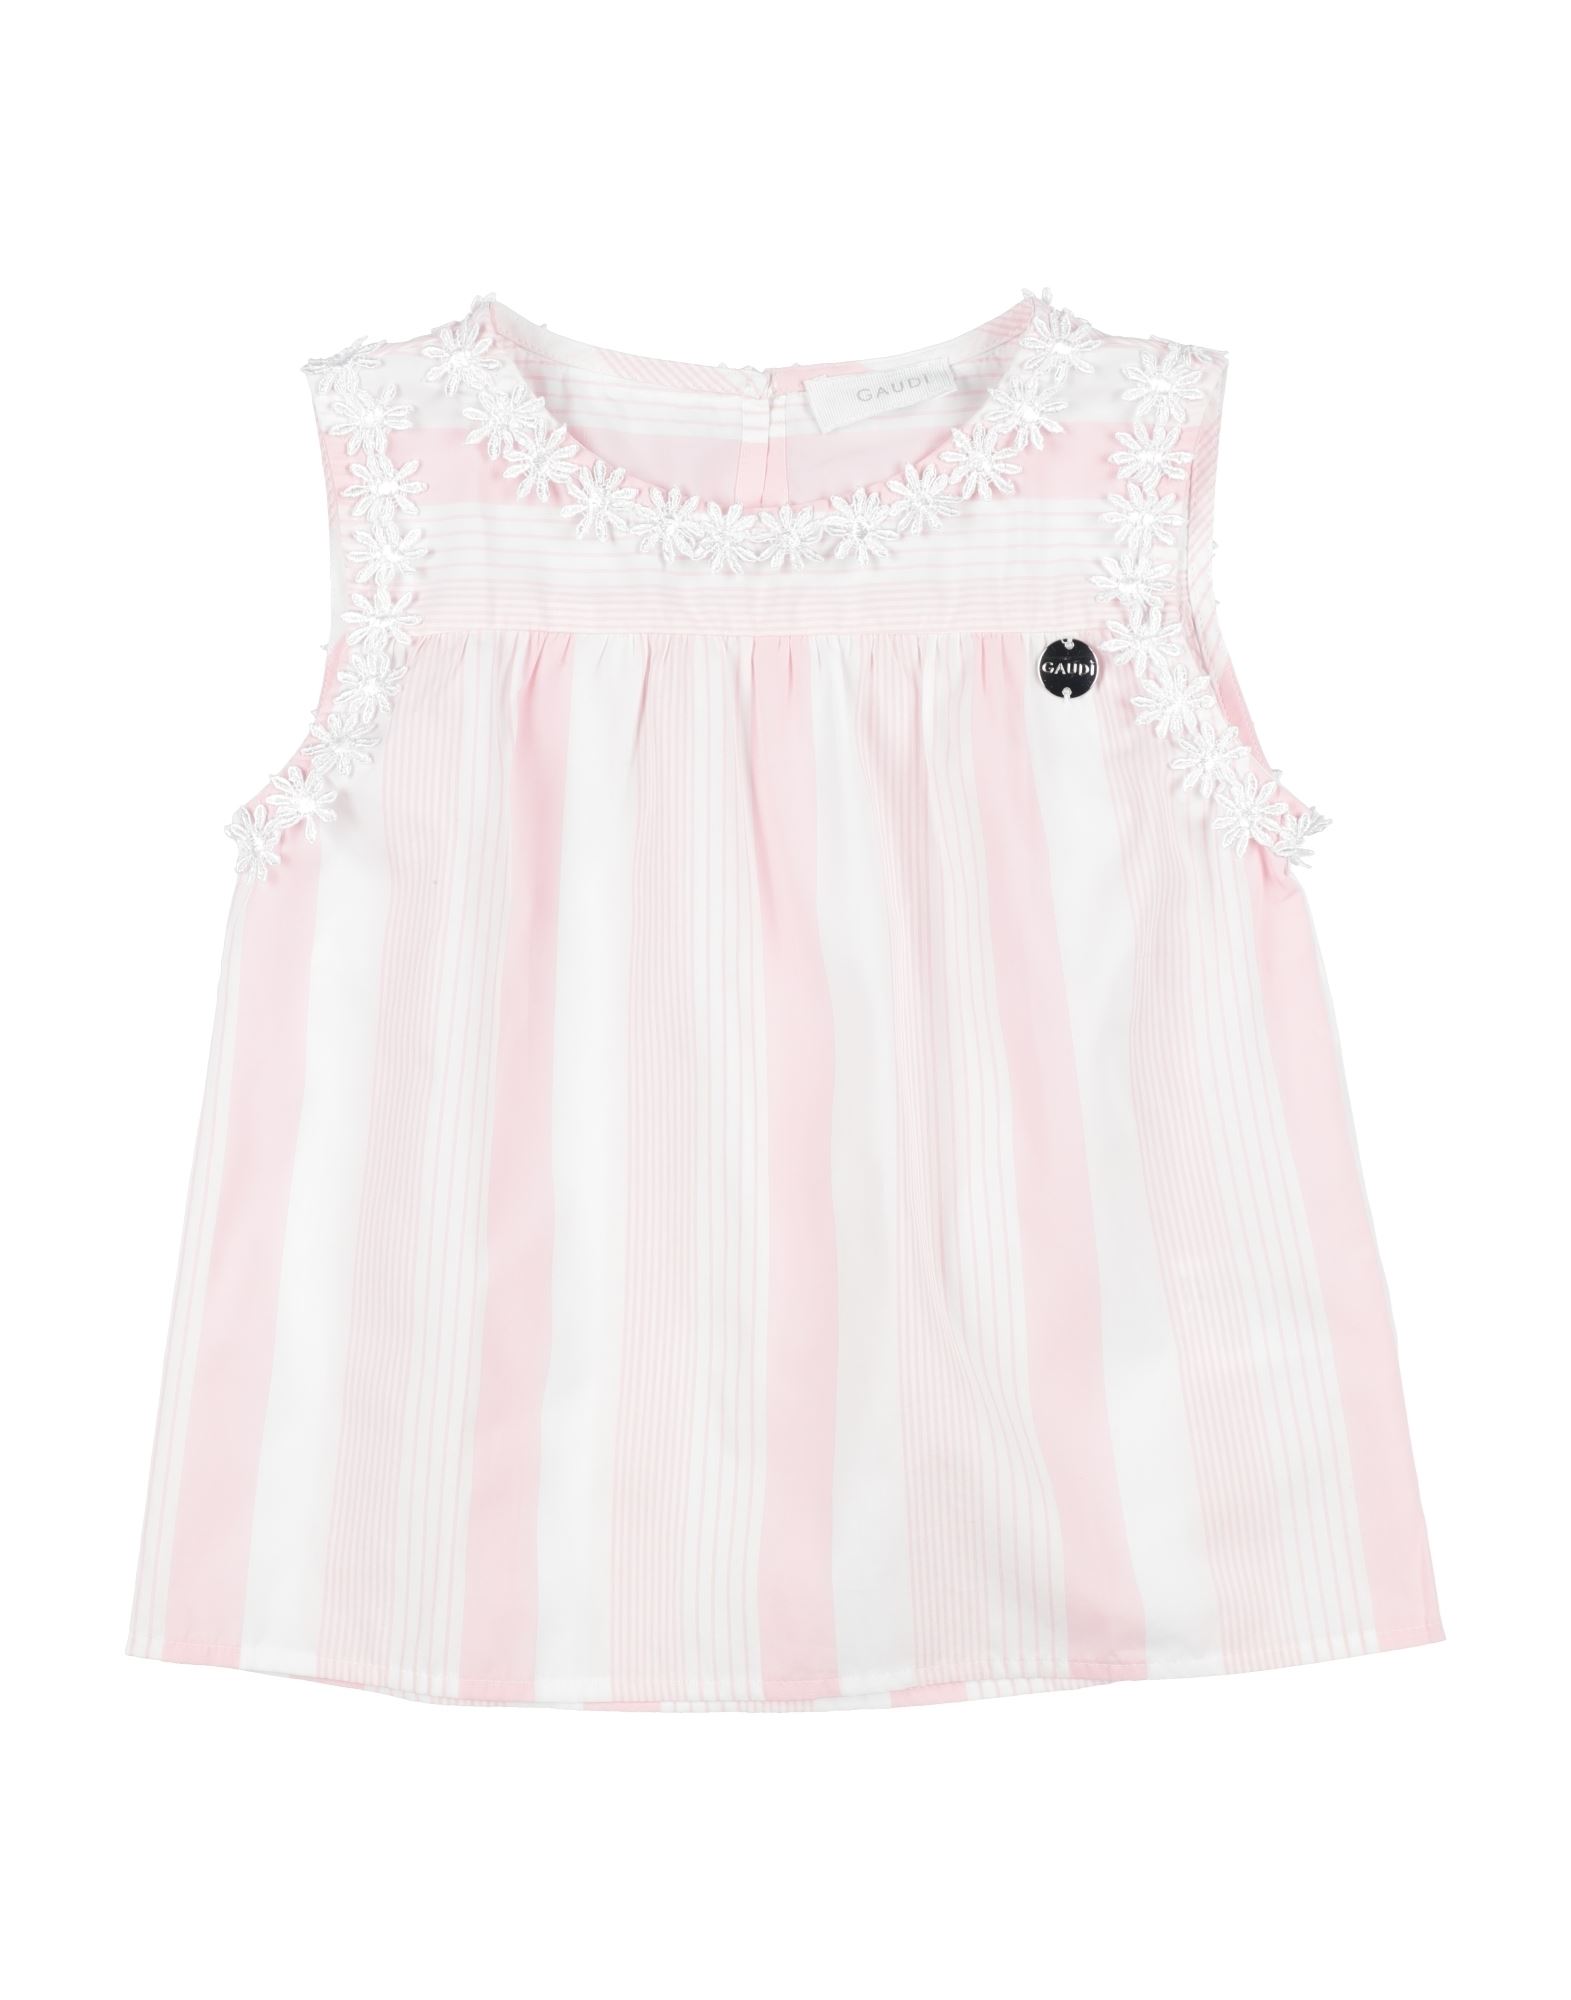 Gaudì Kids'  Toddler Girl Top Light Pink Size 3 Cotton